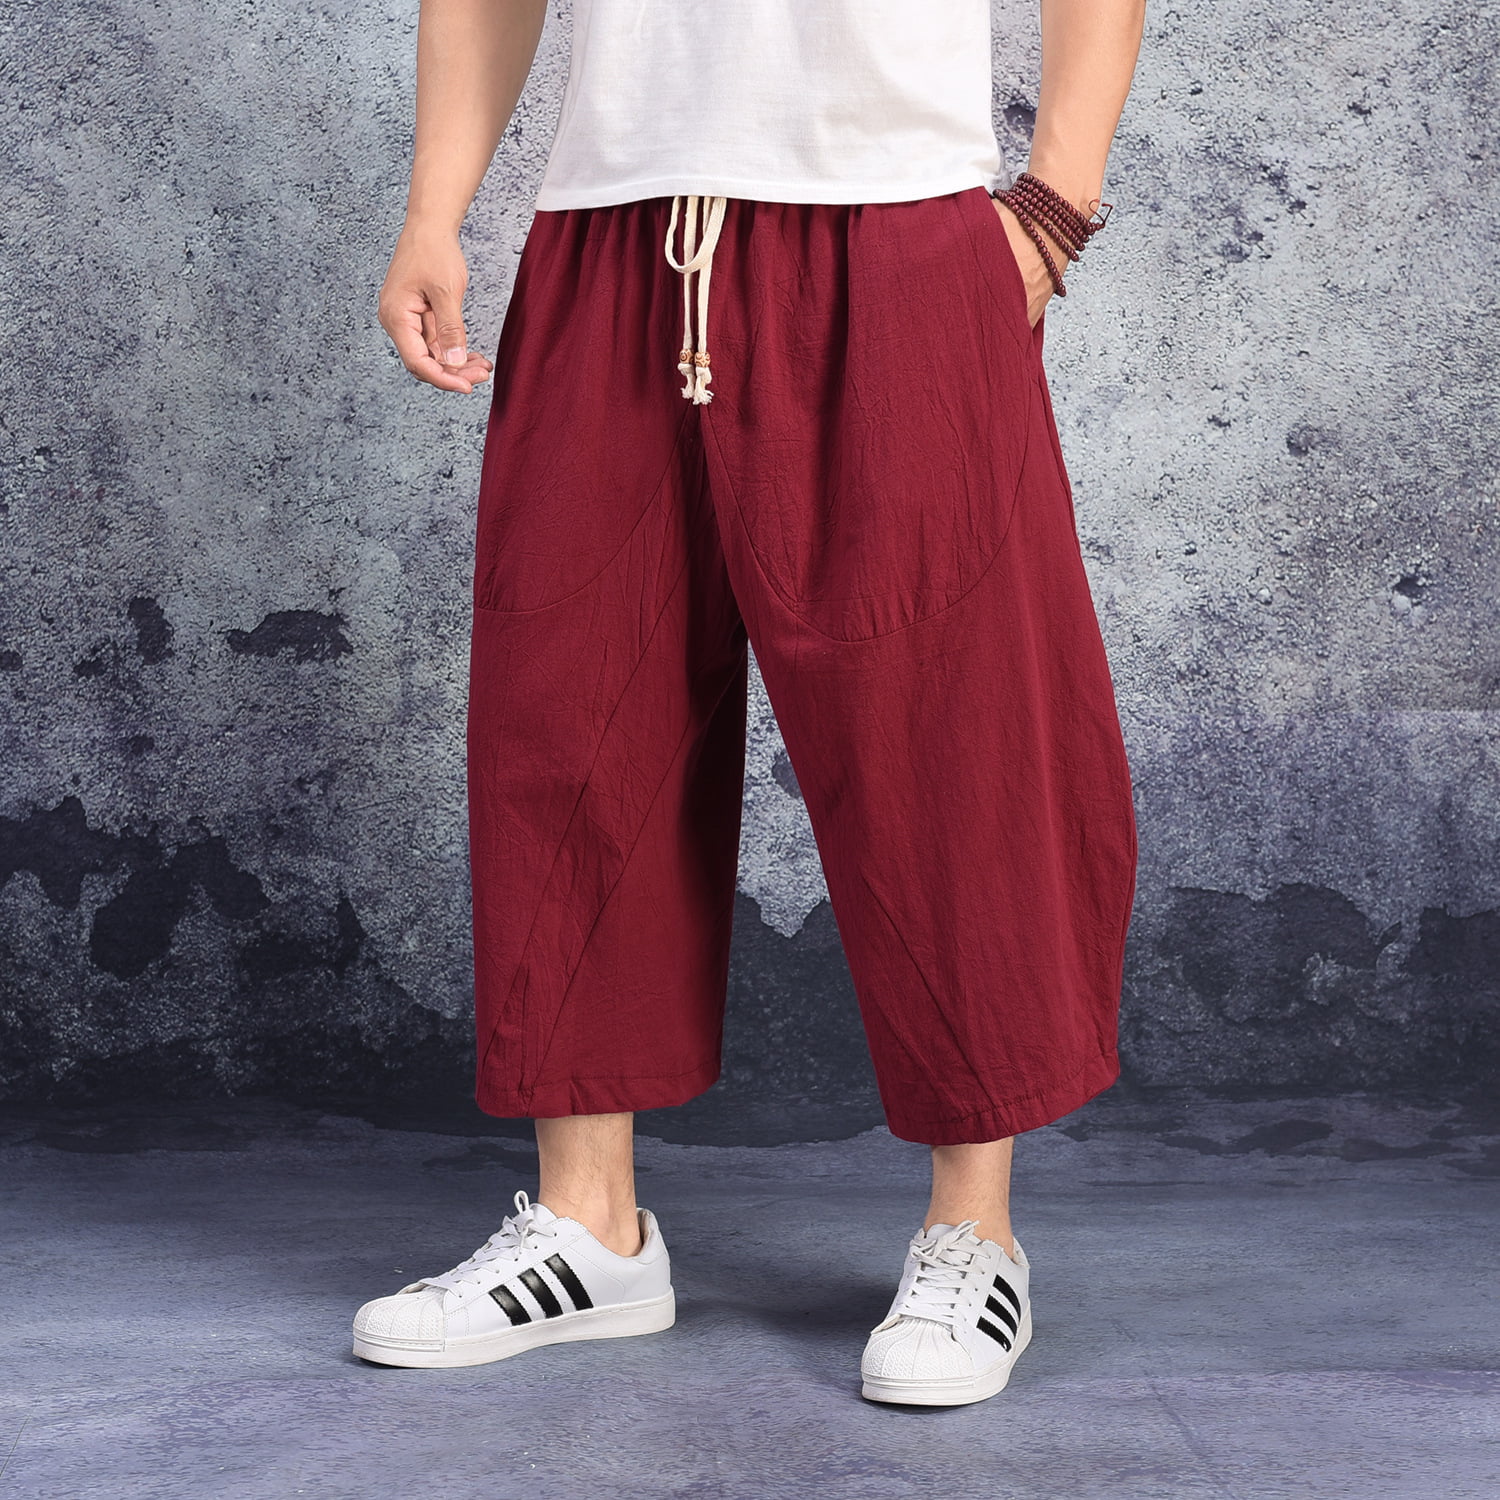 Hurrg Men Elastic Waist Chinese Style Drawstring Linen Harem Long Pants